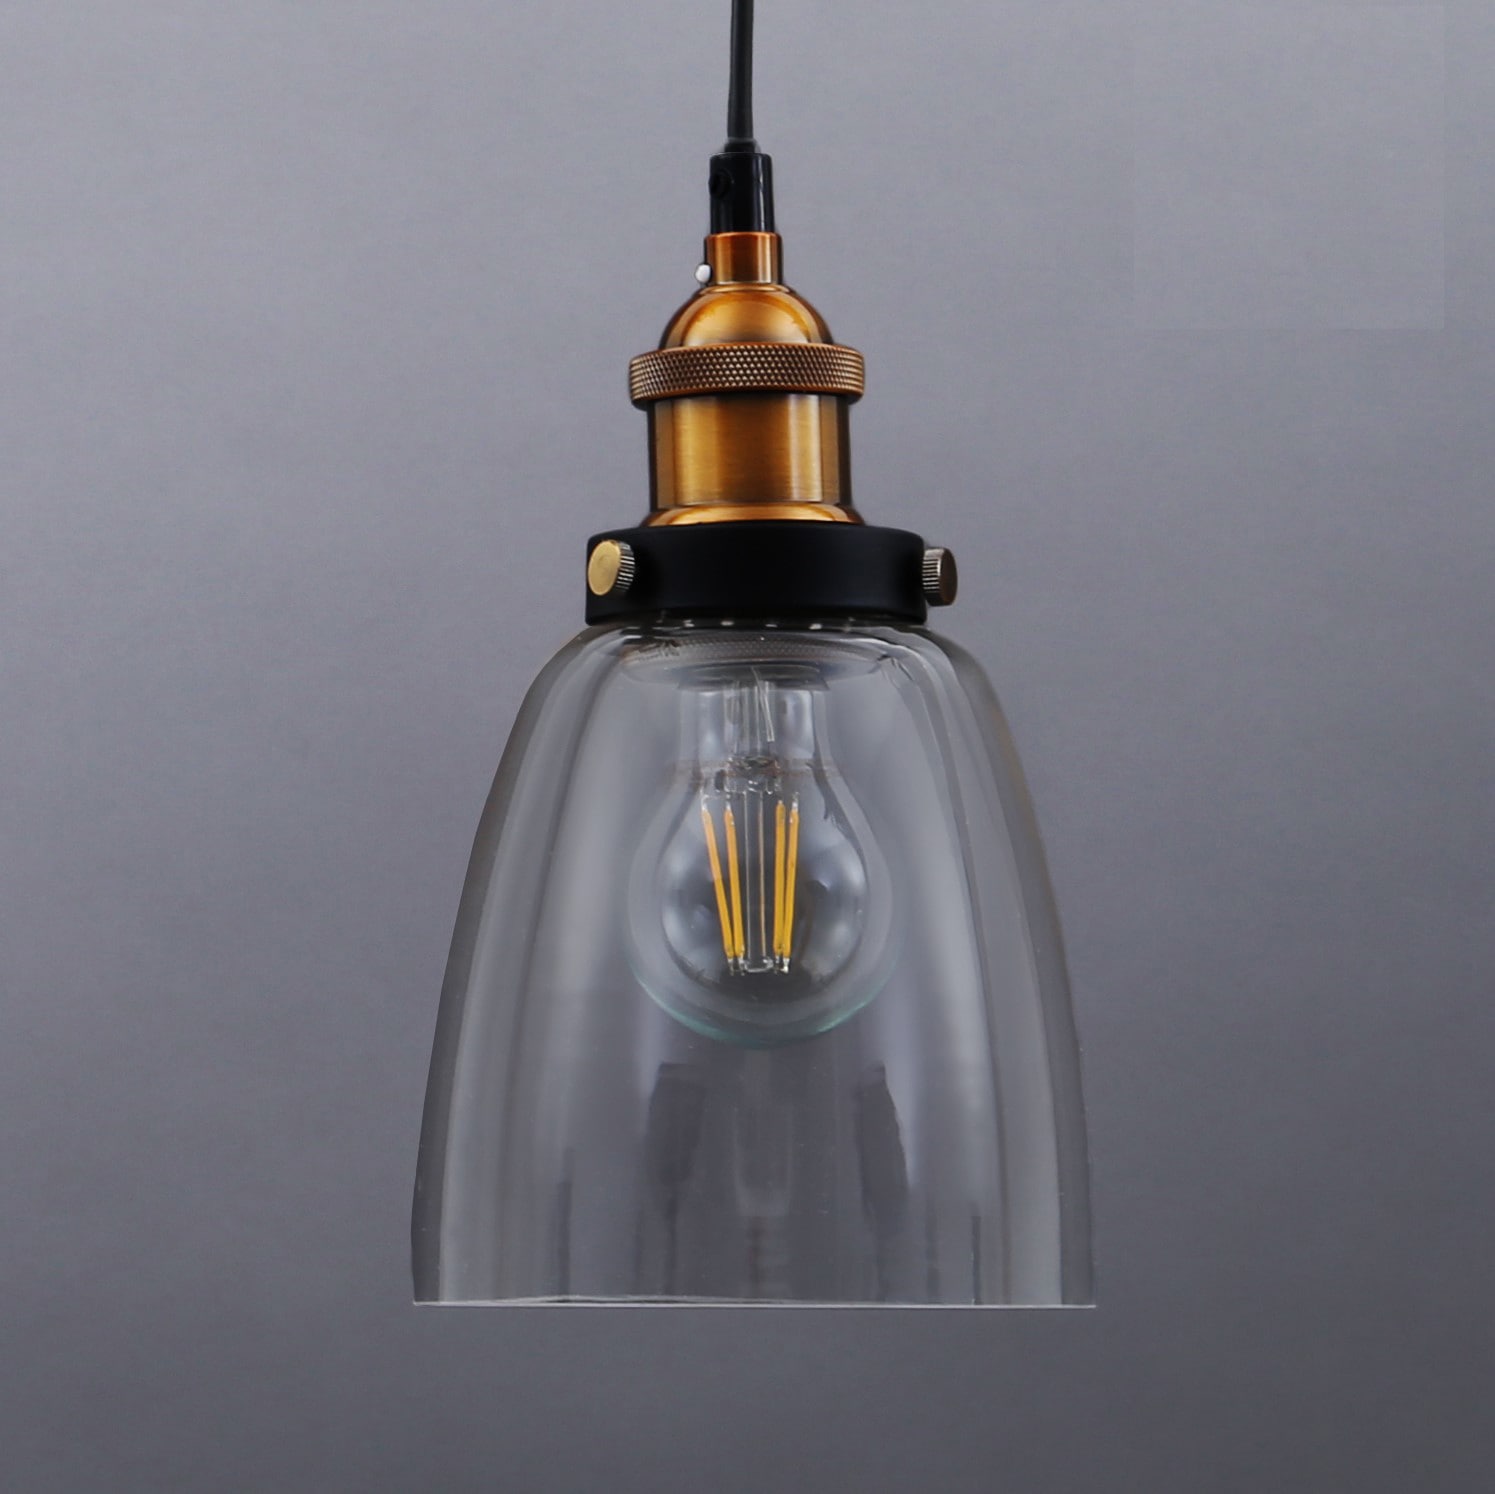 MAXDUYU Pendelleuchte Deckenlampe Schwarz Industrielle Vintage LED Pendellampe E27 Leuchtmittel,Retro Hängelleuchte für Loft Kaffee Bar